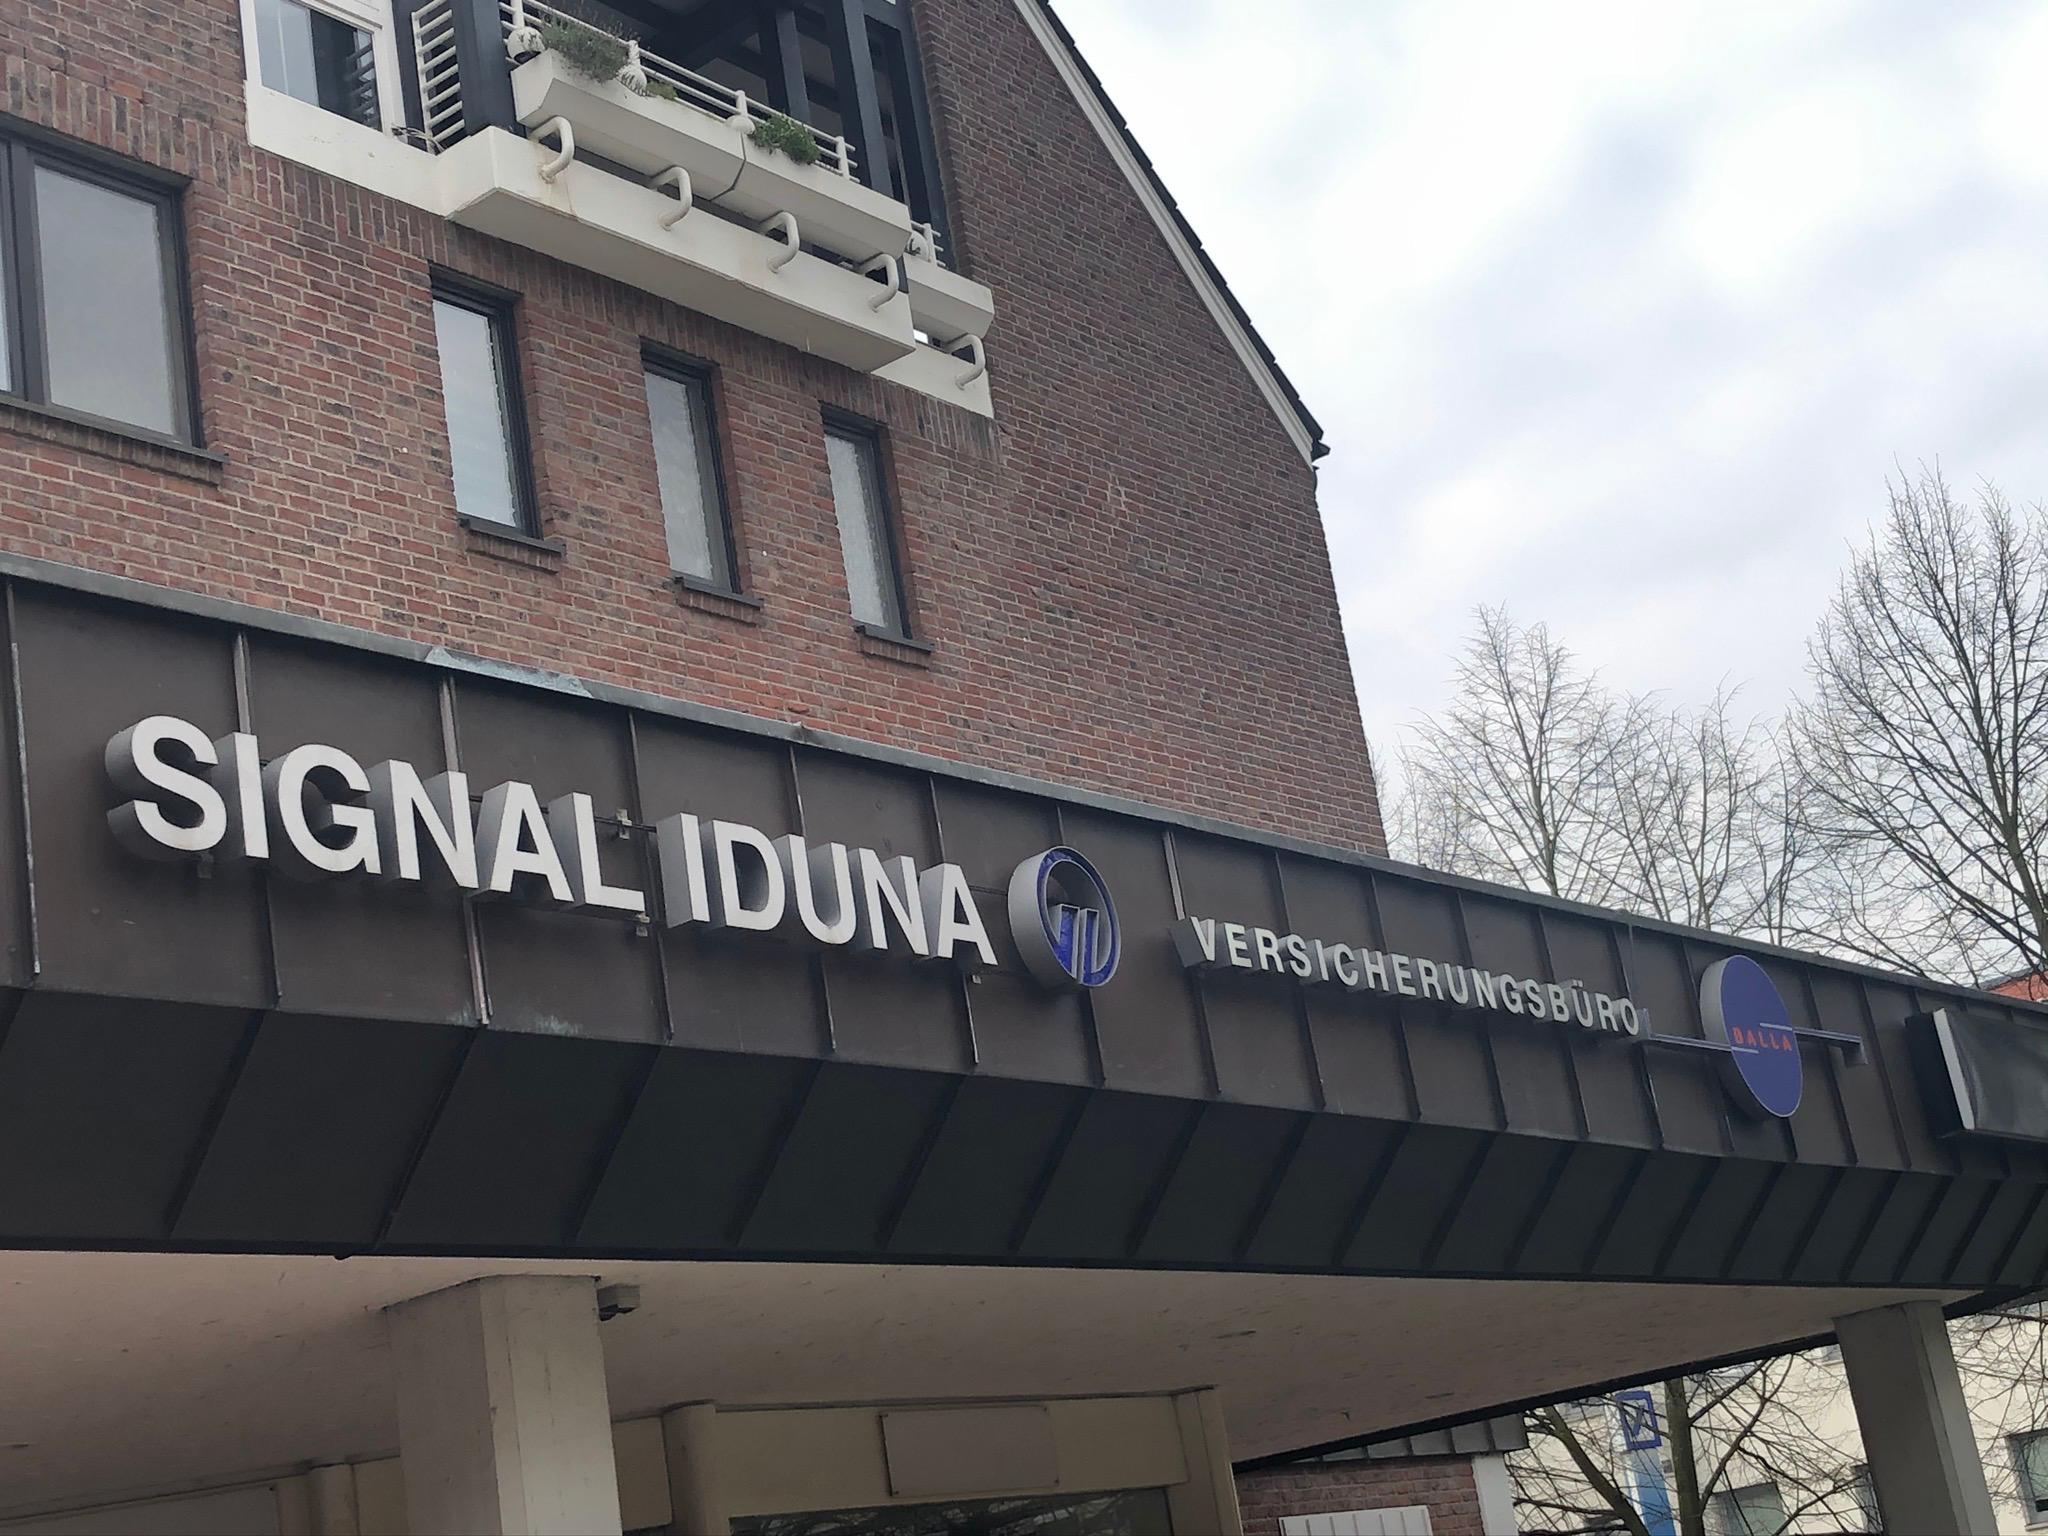 Signal Iduna Versicherungsbüro Frank Balla e.K.
Bezirksdirektion der Signal Iduna Gruppe